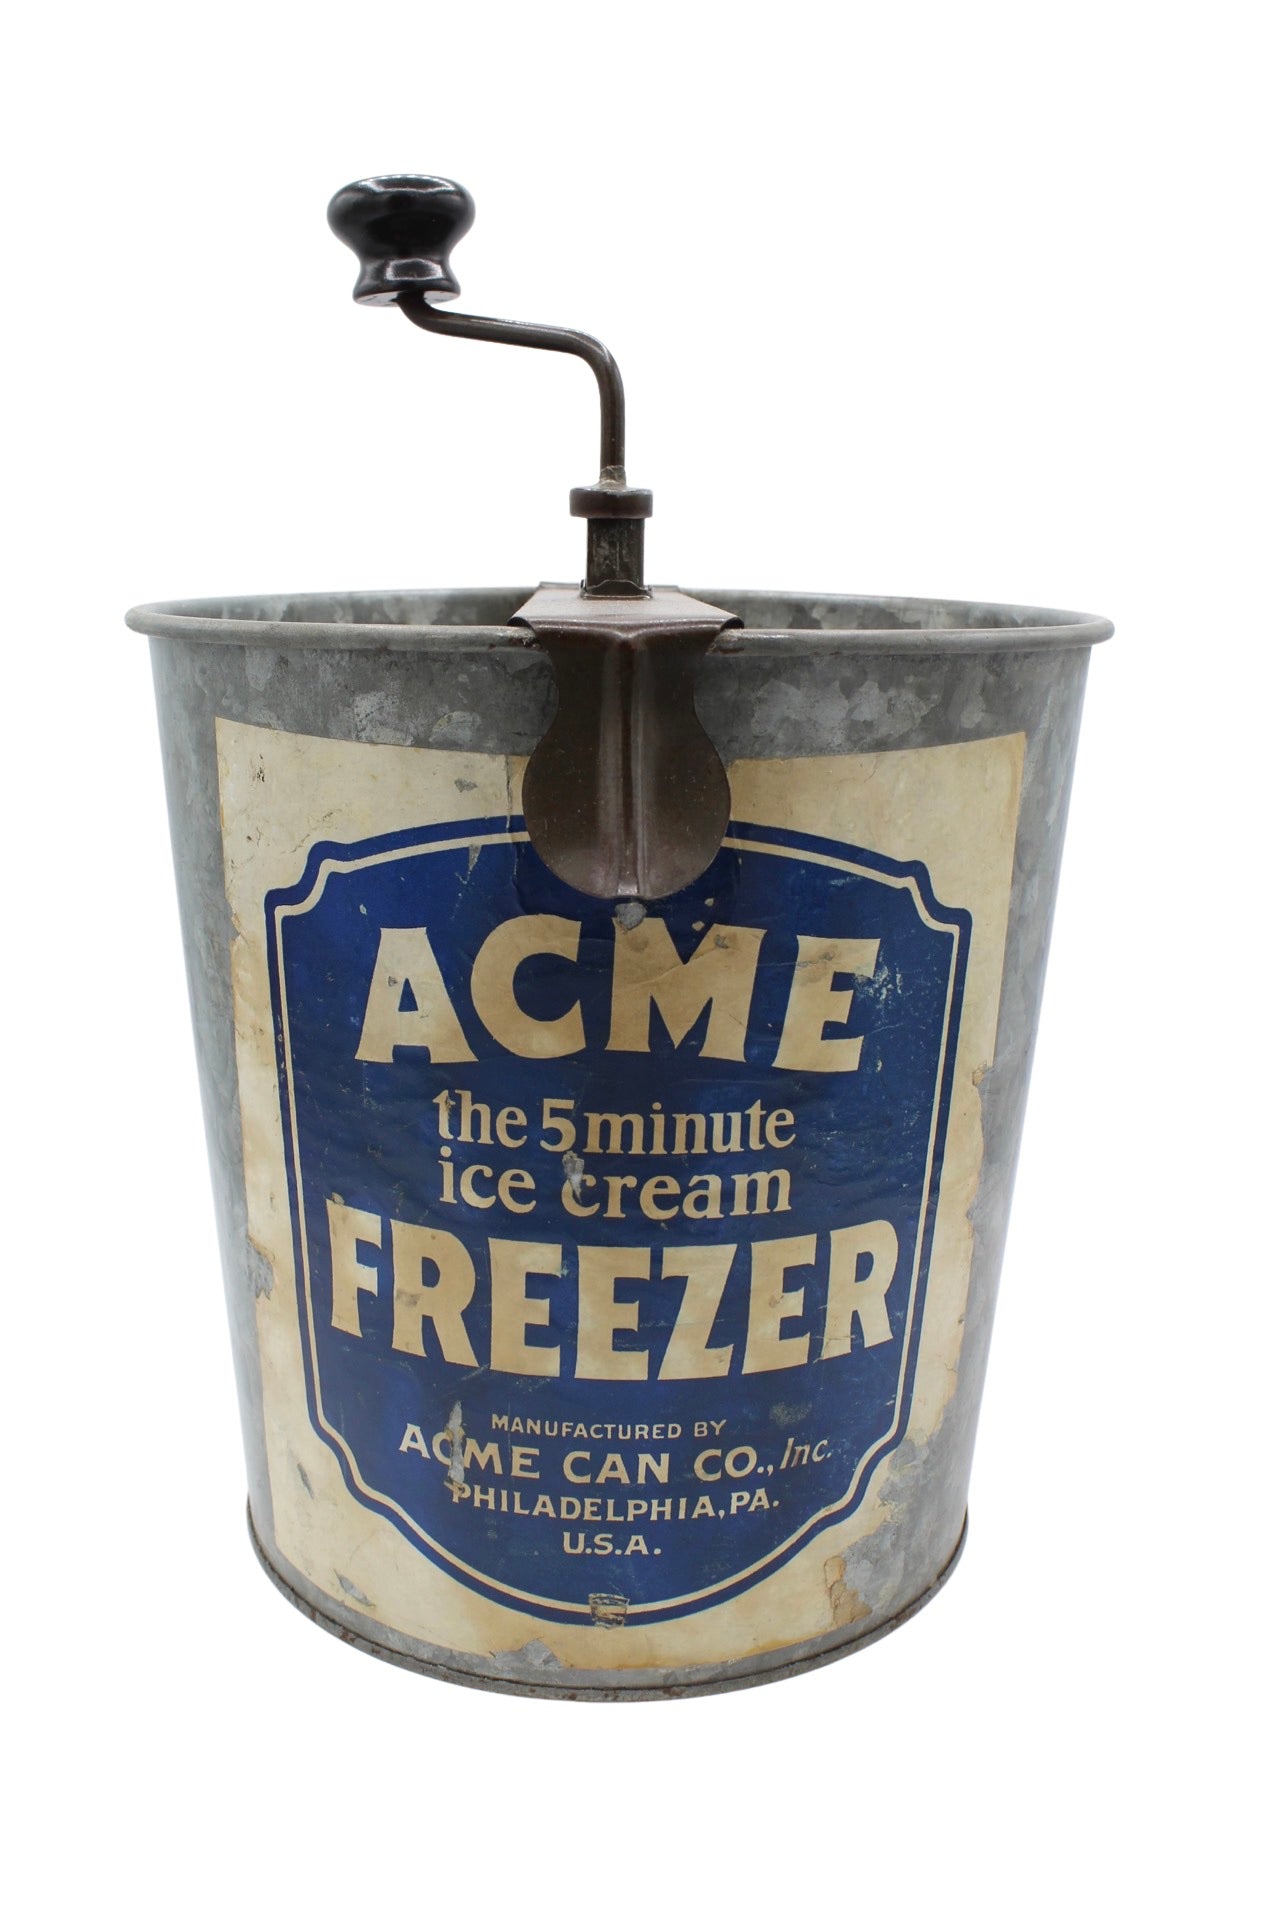 Acme Ice Cream Freezer